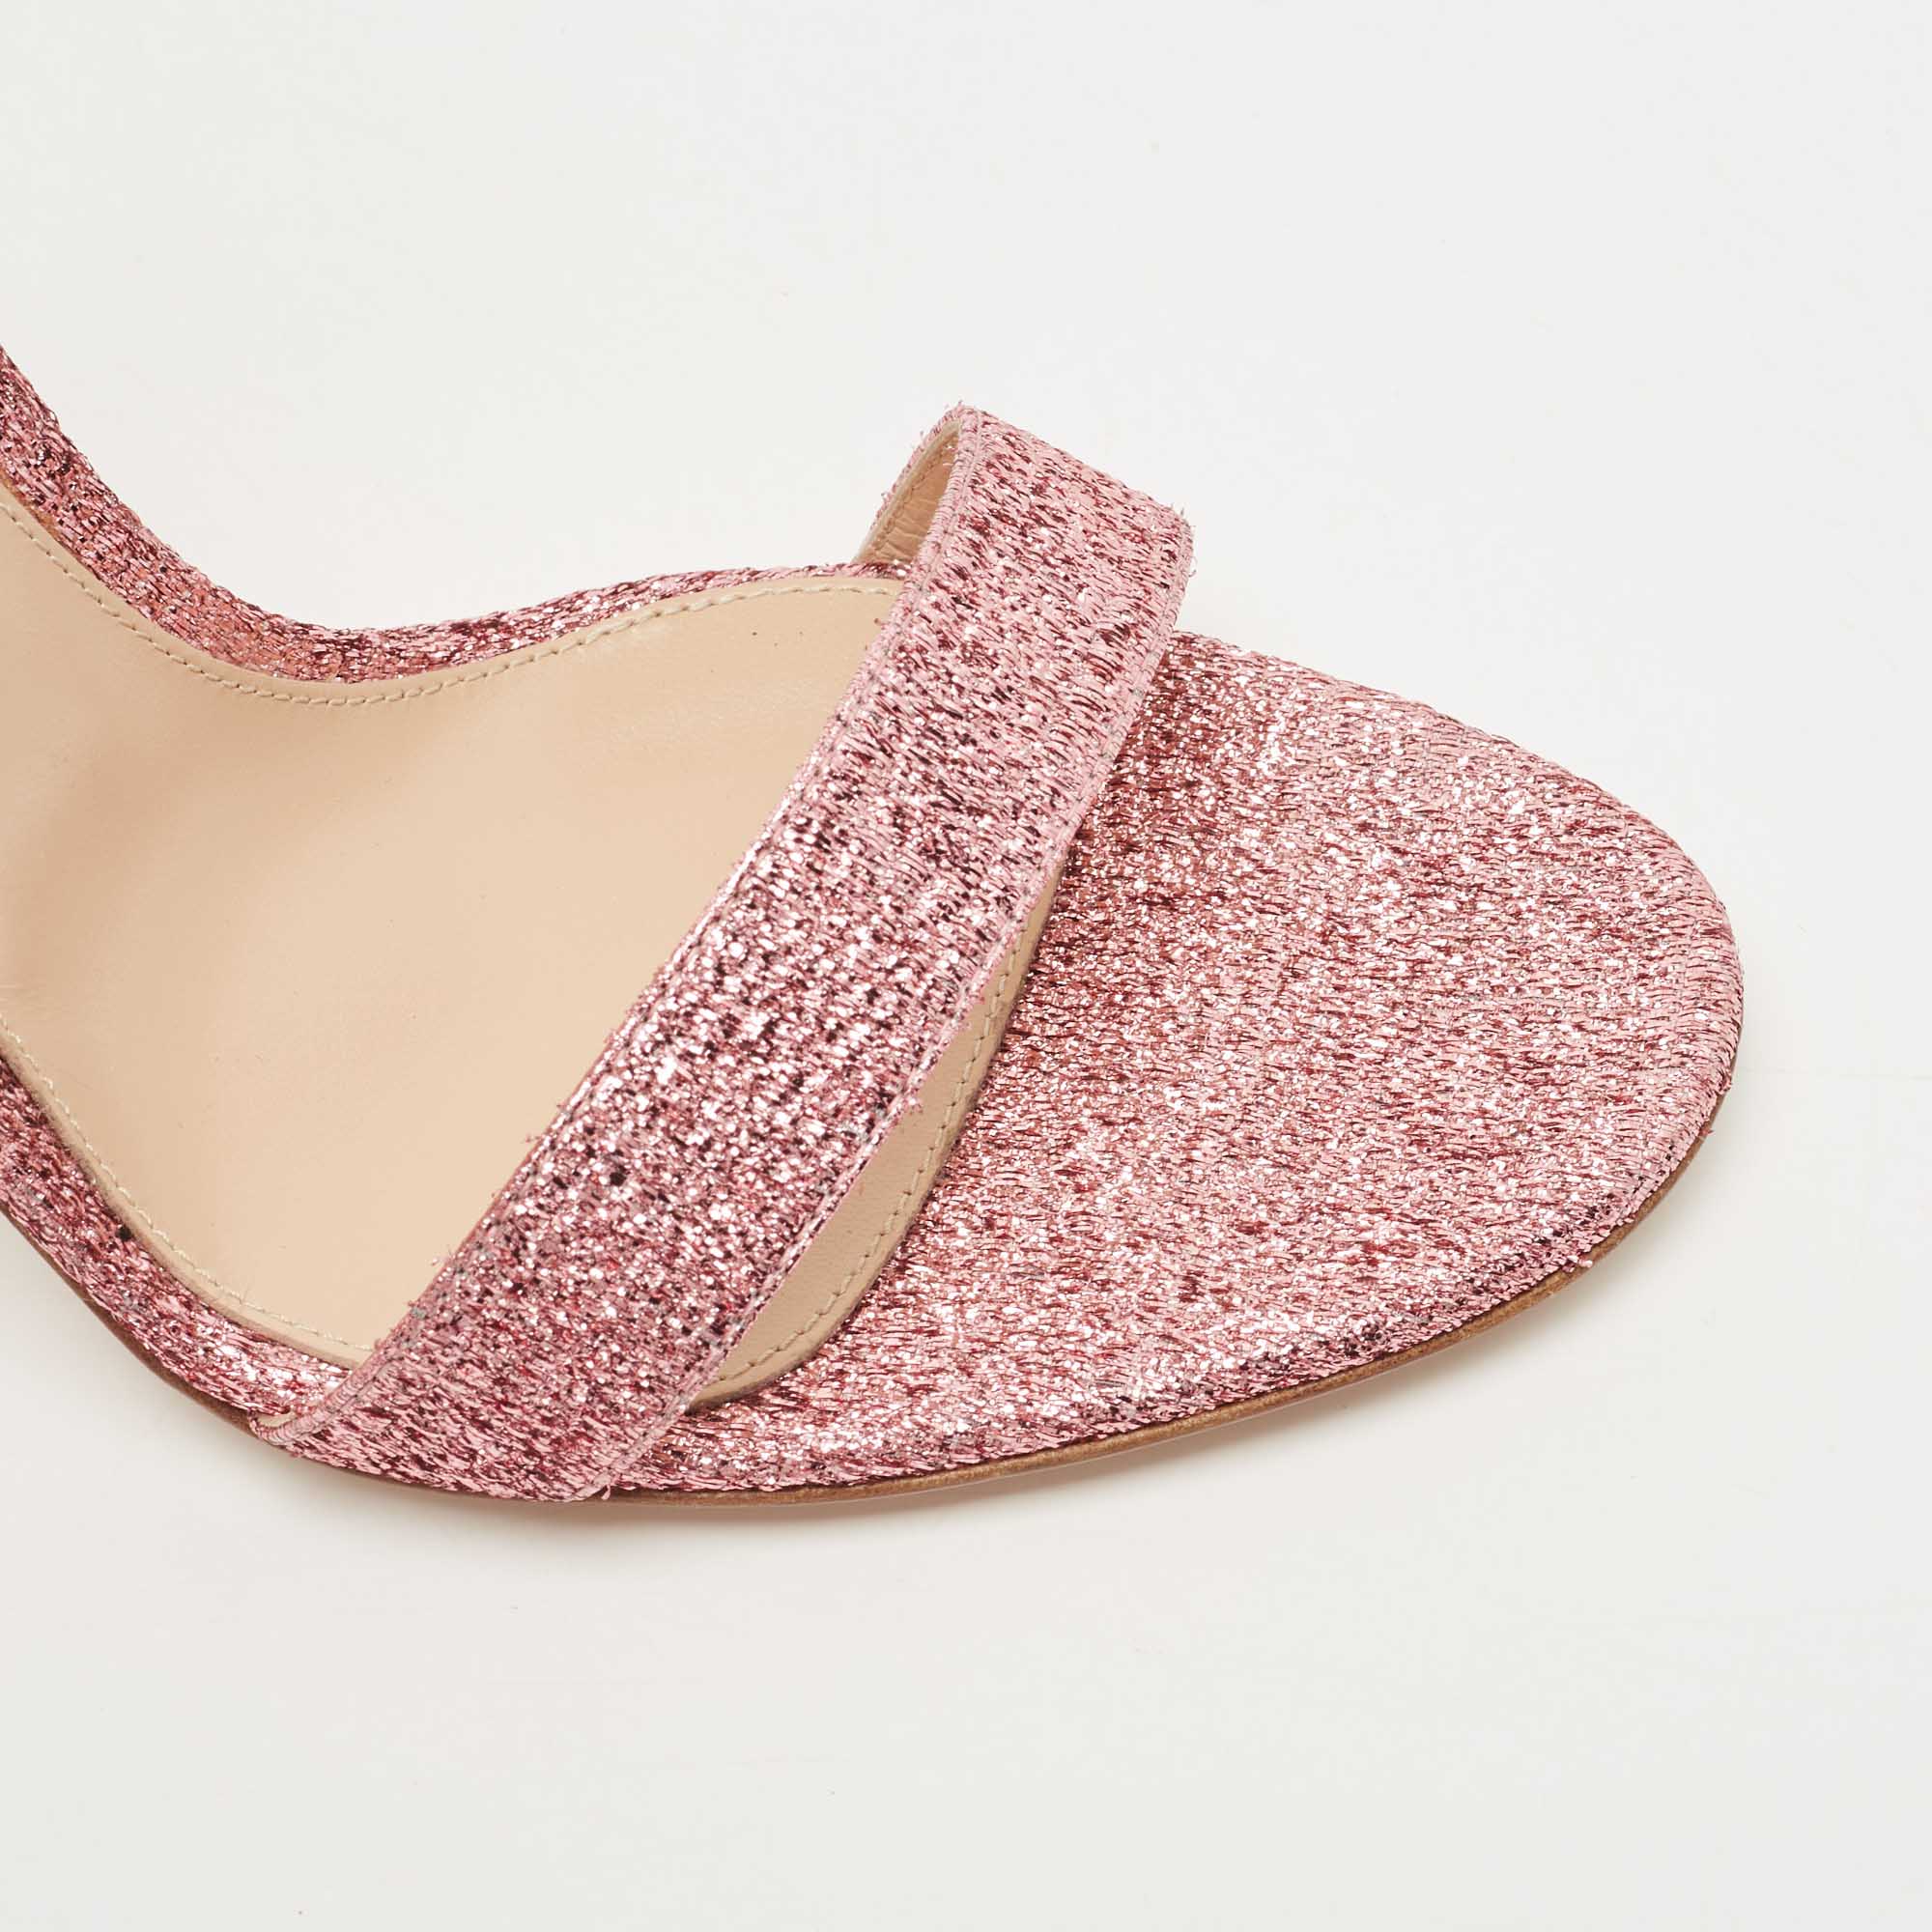 Gianvito Rossi Pink Glitter Portofino Ankle Strap Sandals Size 41